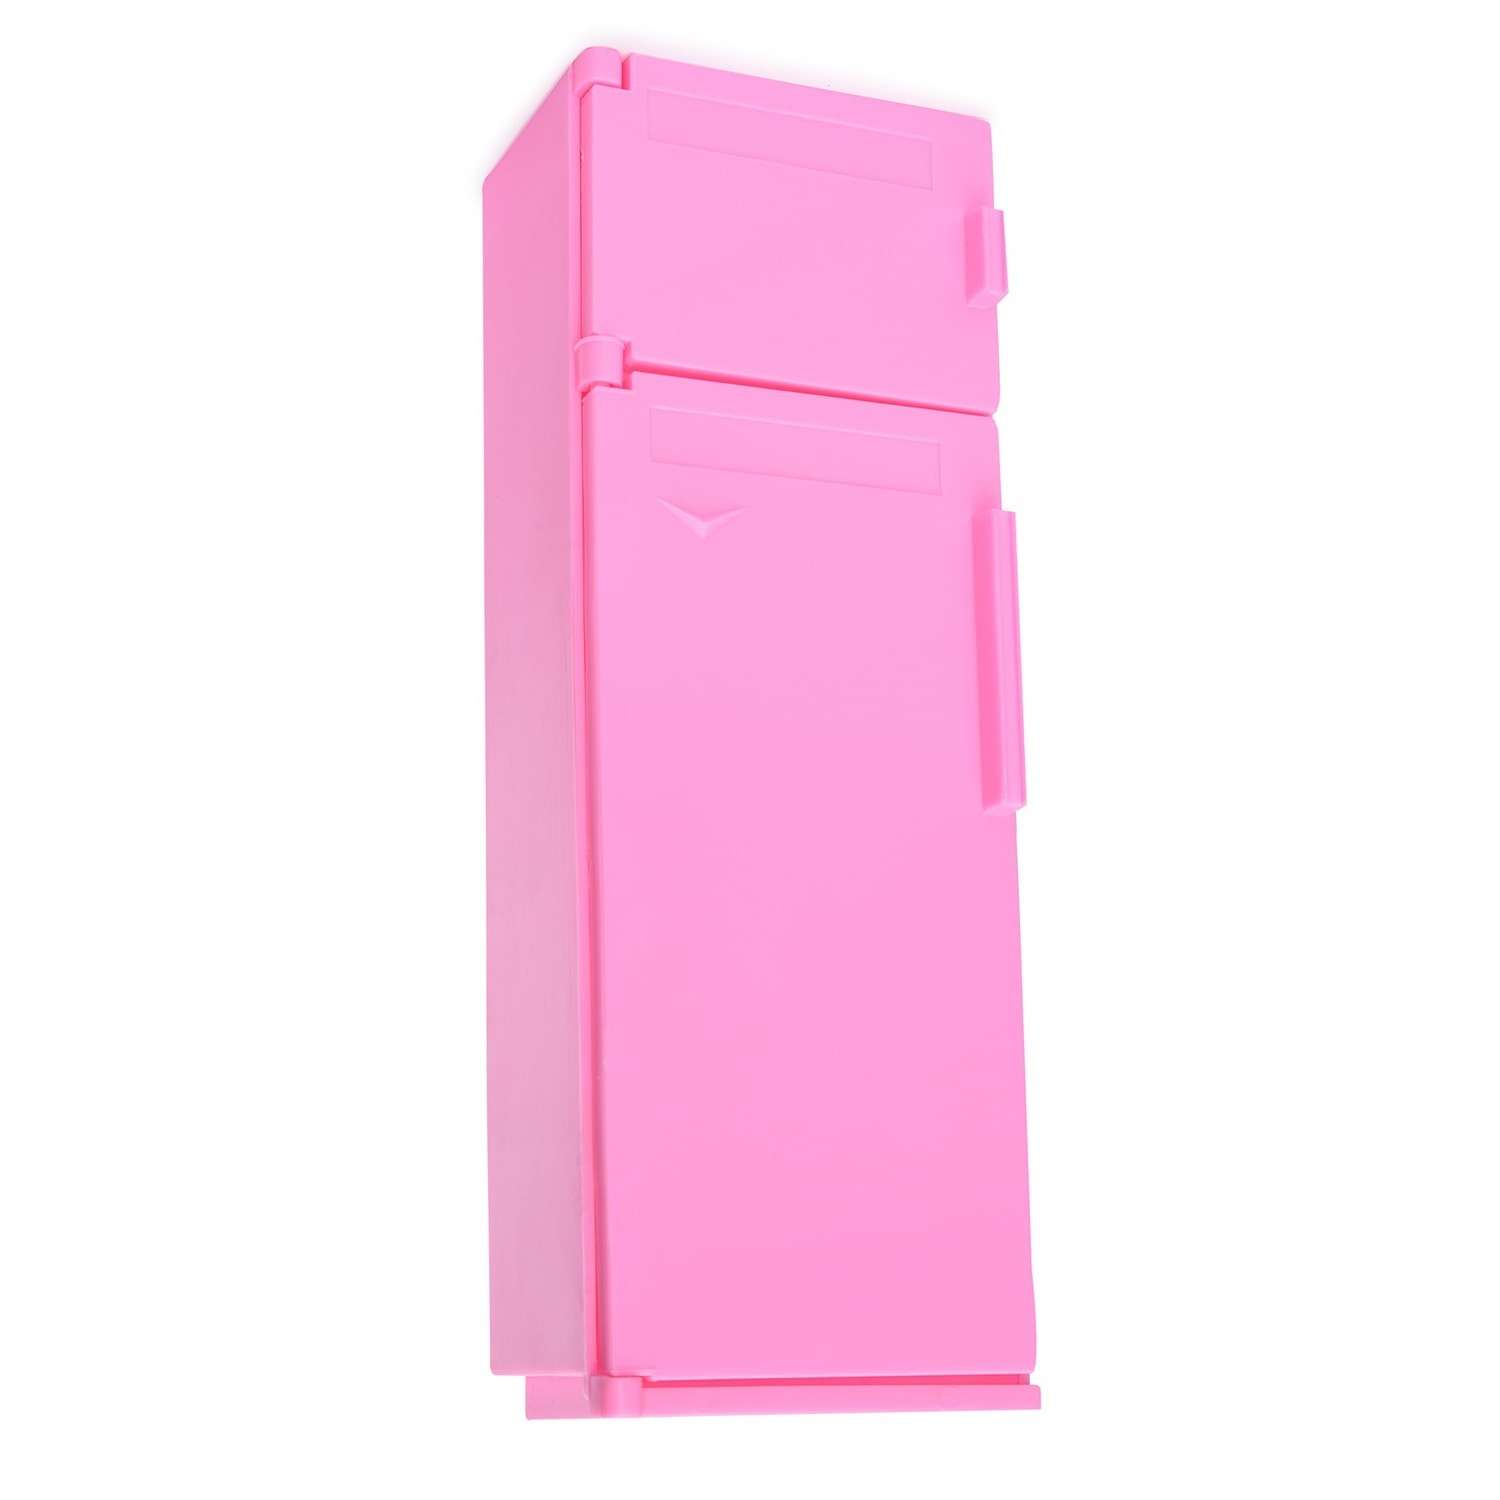 Холодильник Огонек Розовый С-1385 - фото 1